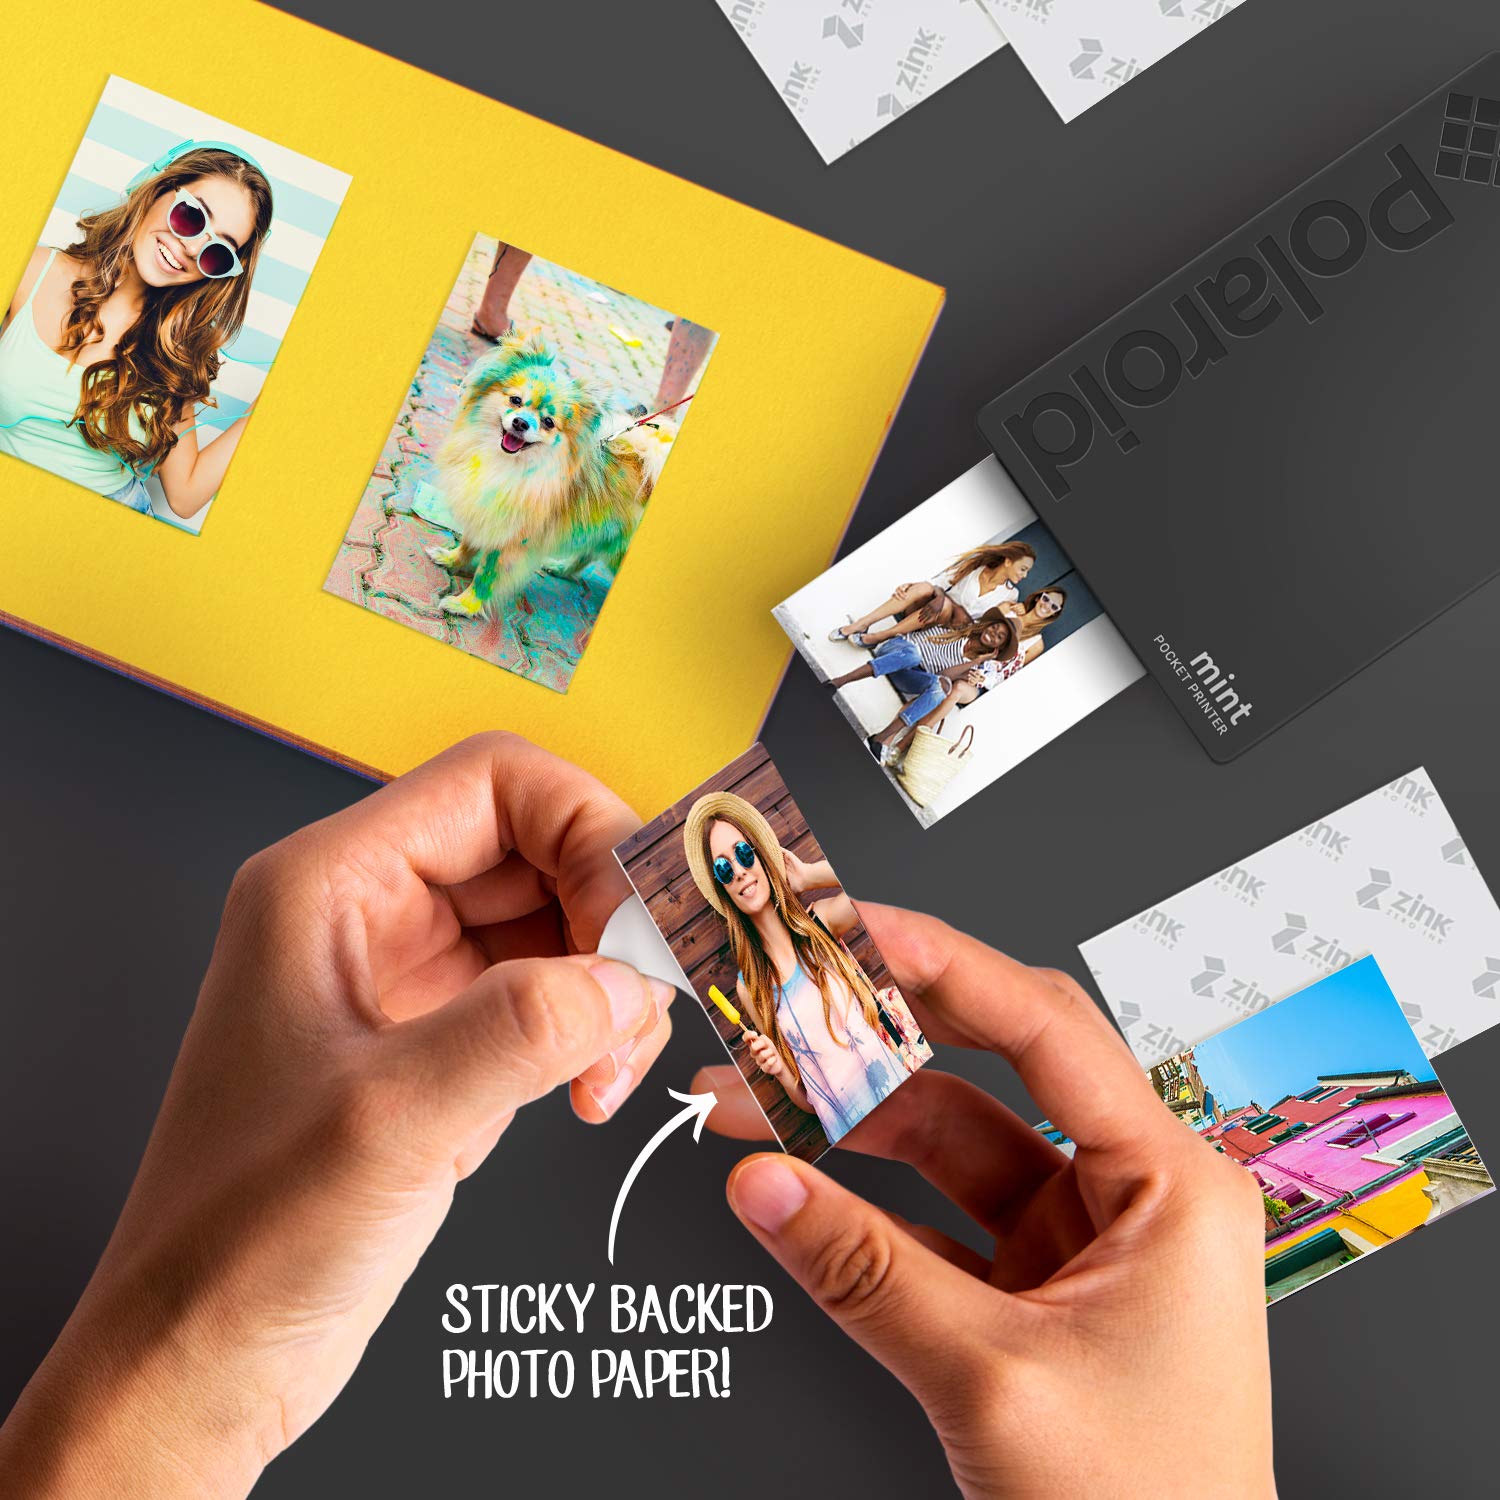 Портативный принтер Polaroid Mint Yellow